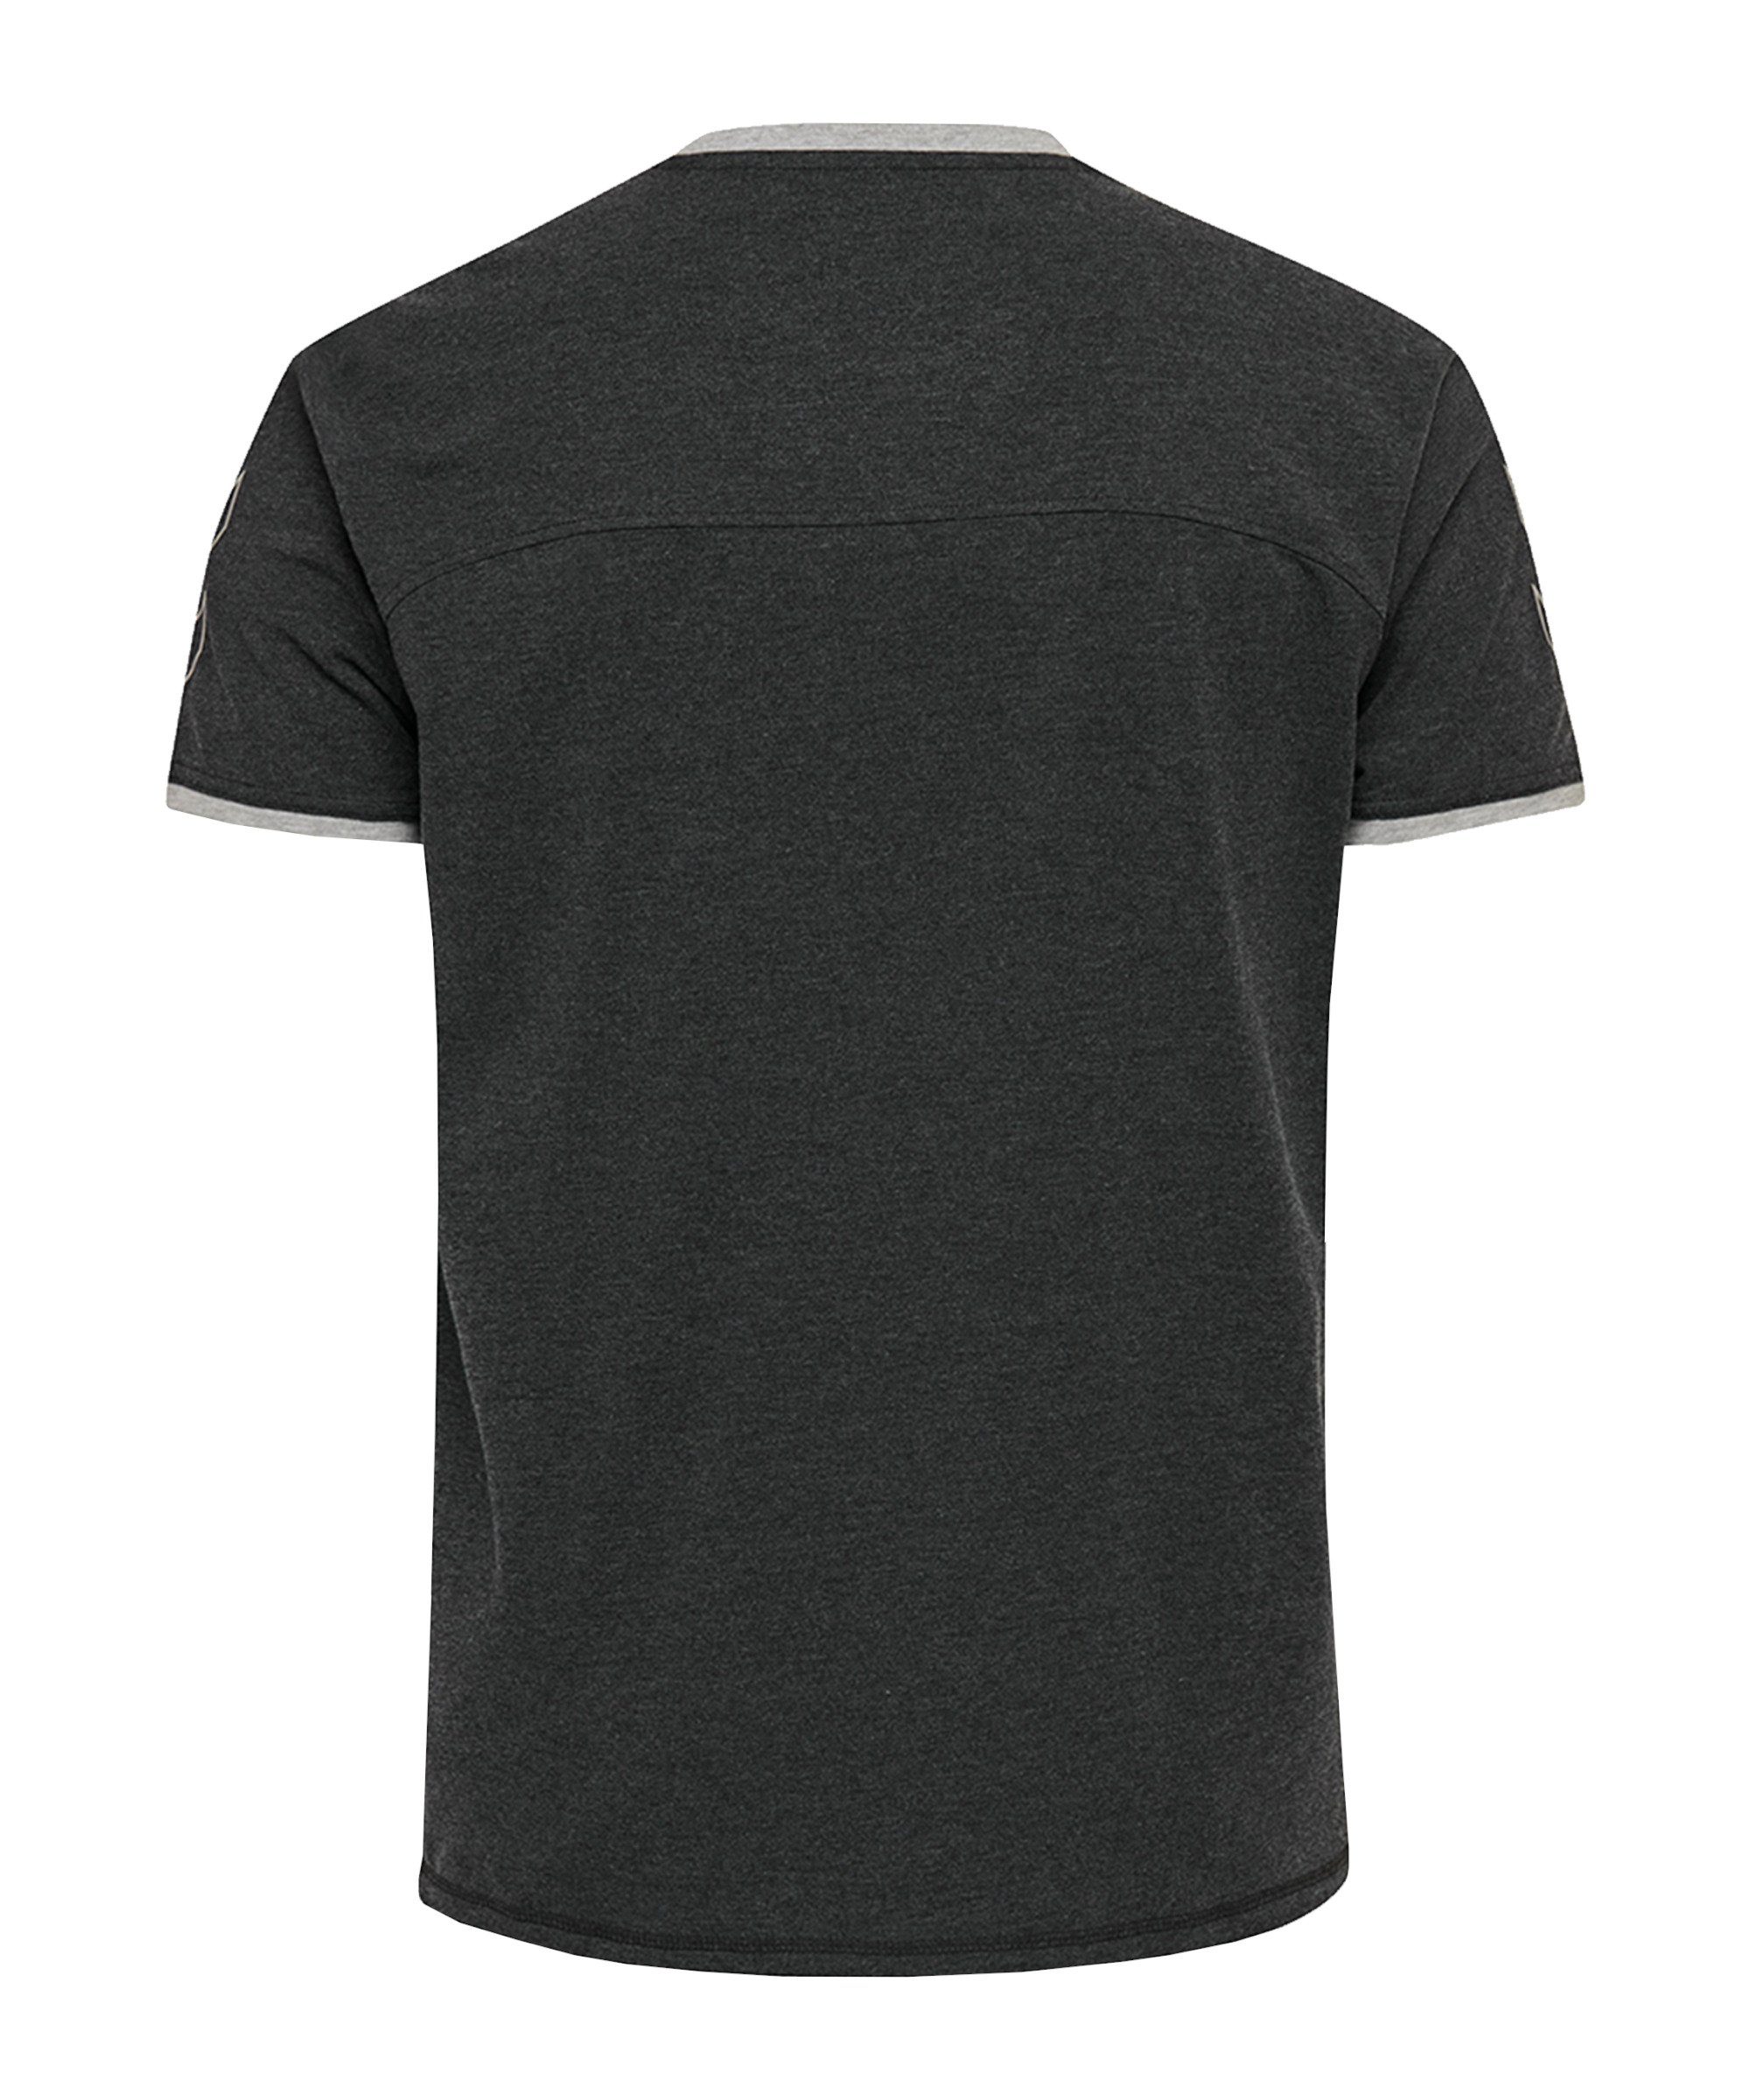 Cima schwarz hummel T-Shirt T-Shirt default